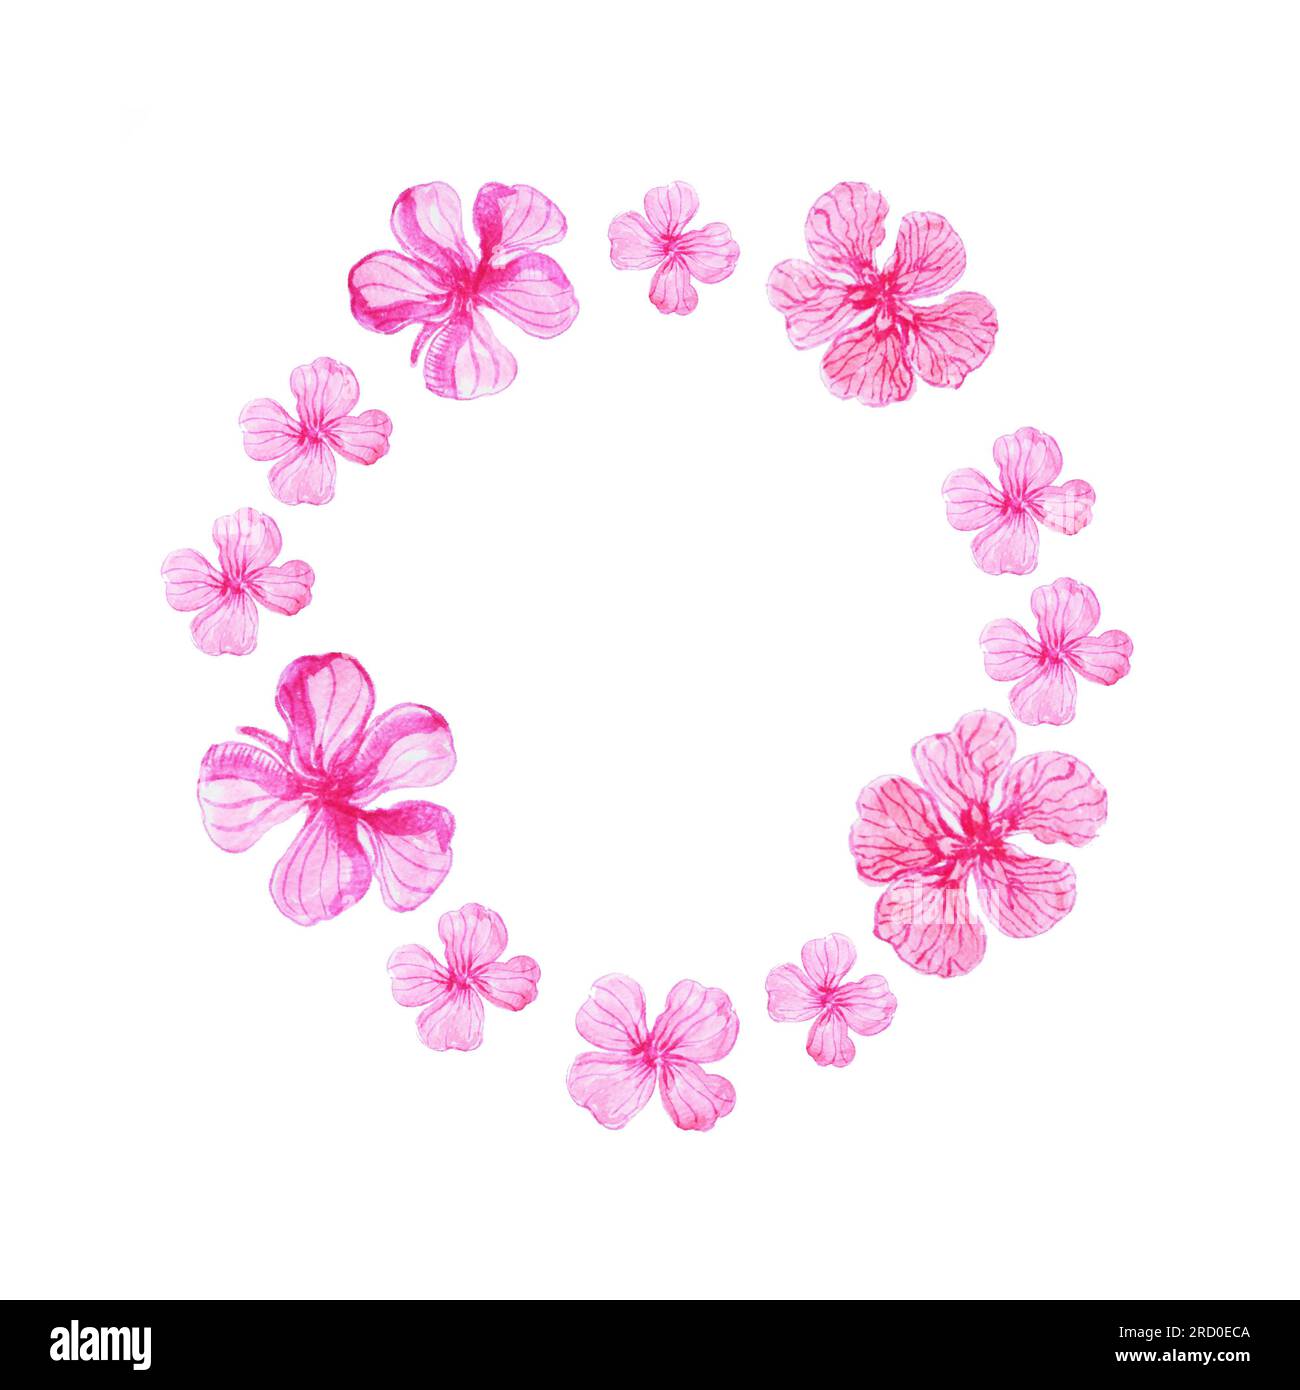 Ovaler Rahmen in Aquarellfarben mit pinkfarbenen fünf-Blatt-Blumen auf weißem Hintergrund Stockfoto